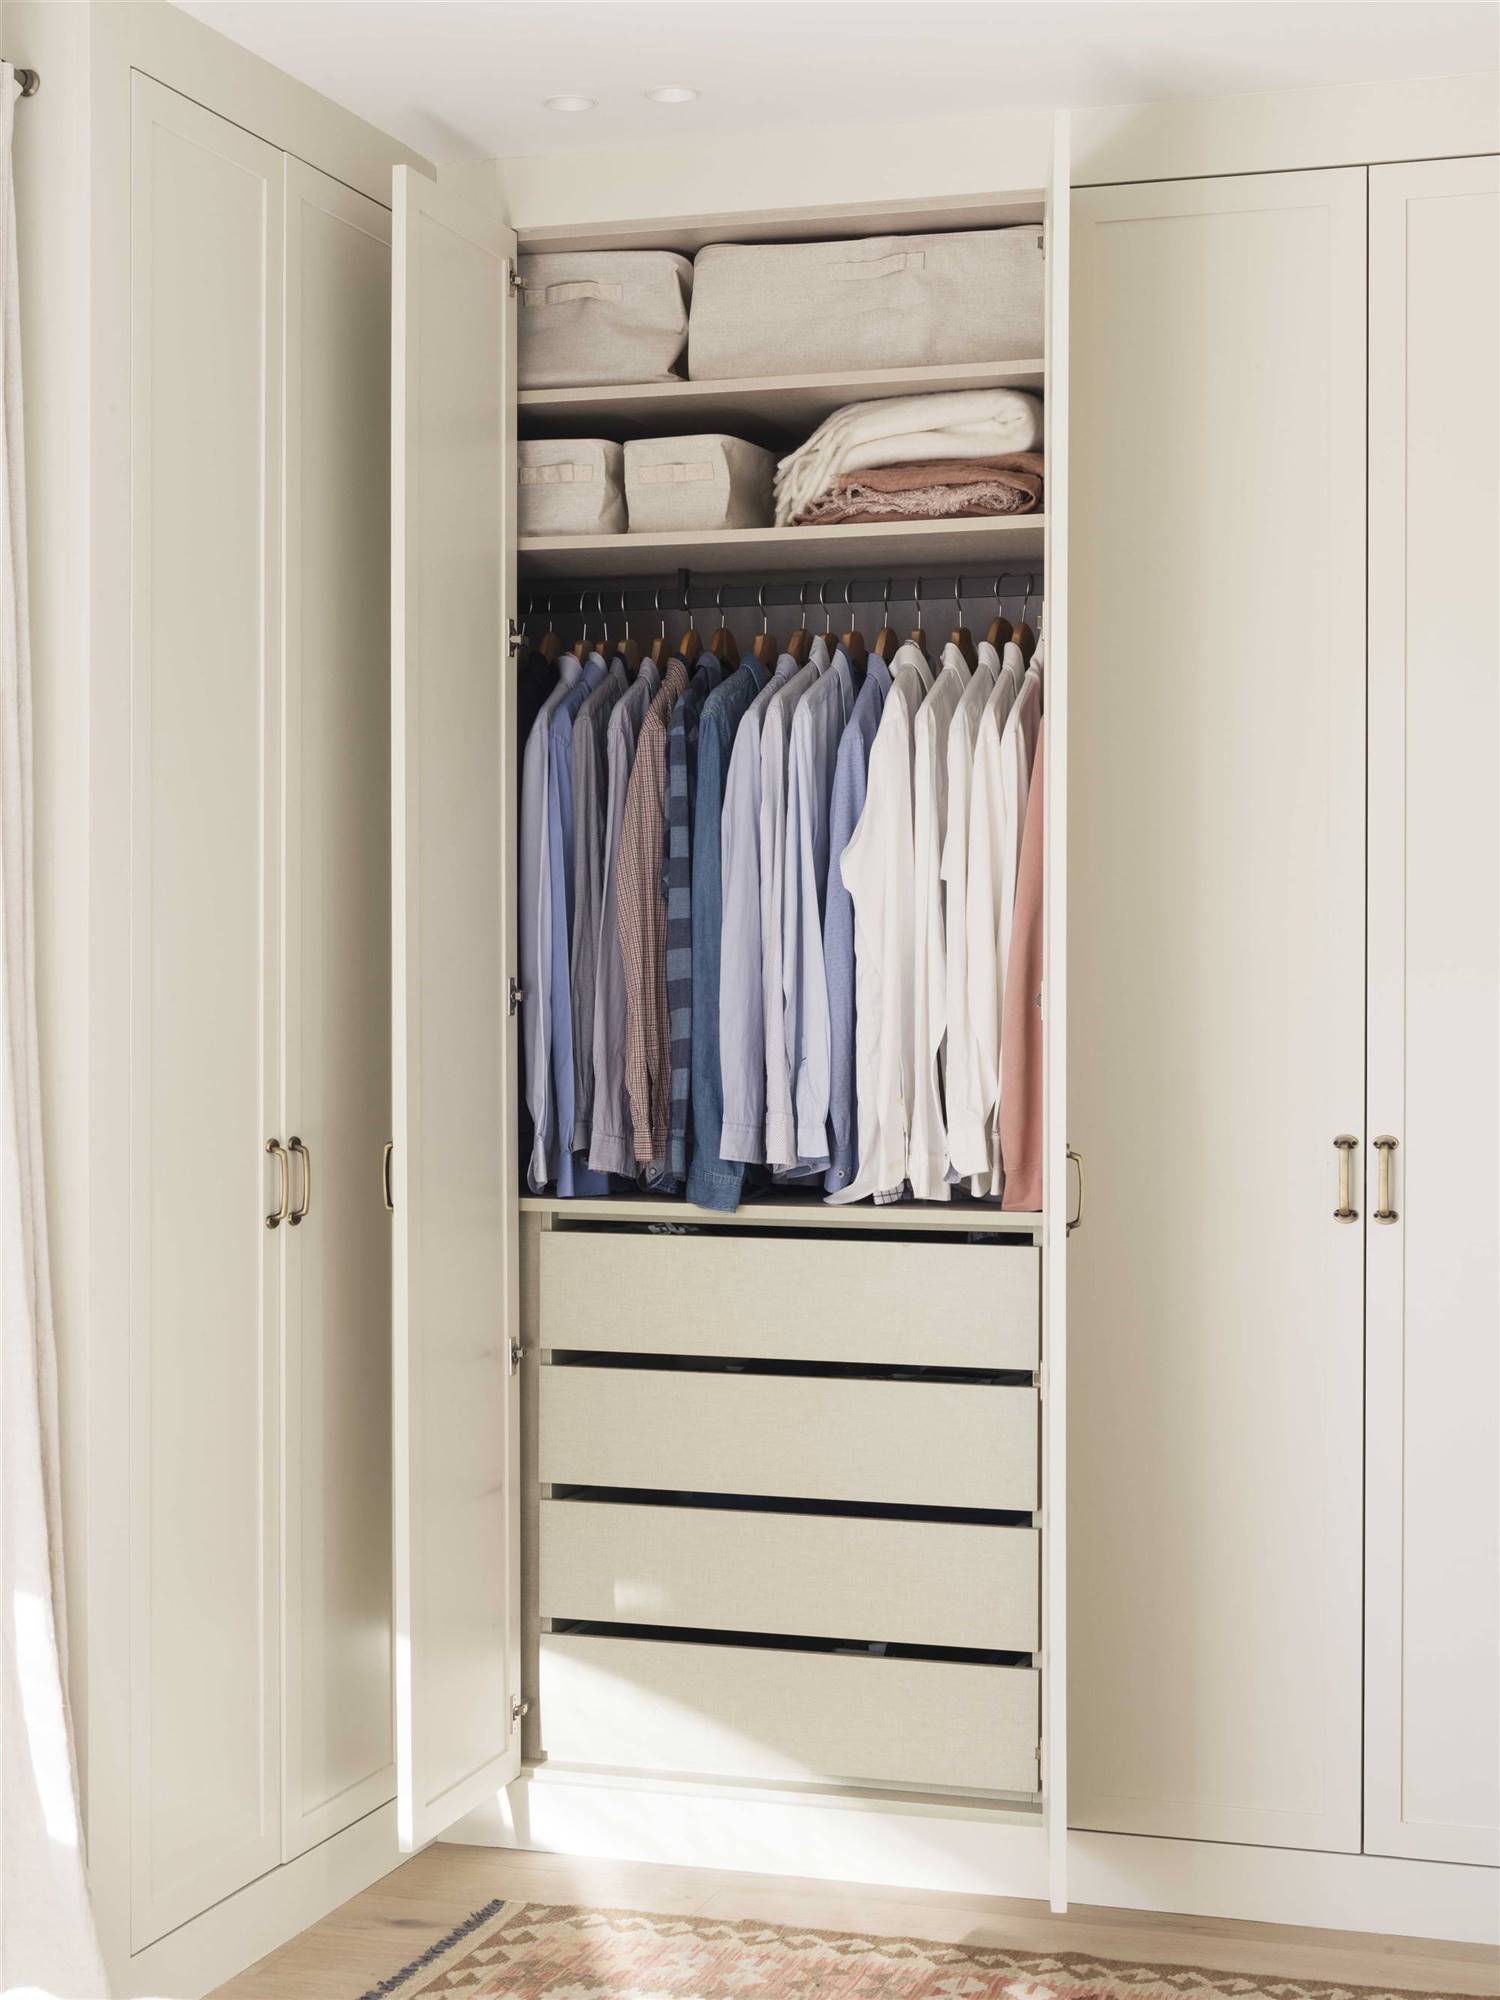 interior-de-armario-con-camisas-y-cajas-en-la-parte-superior-00529049